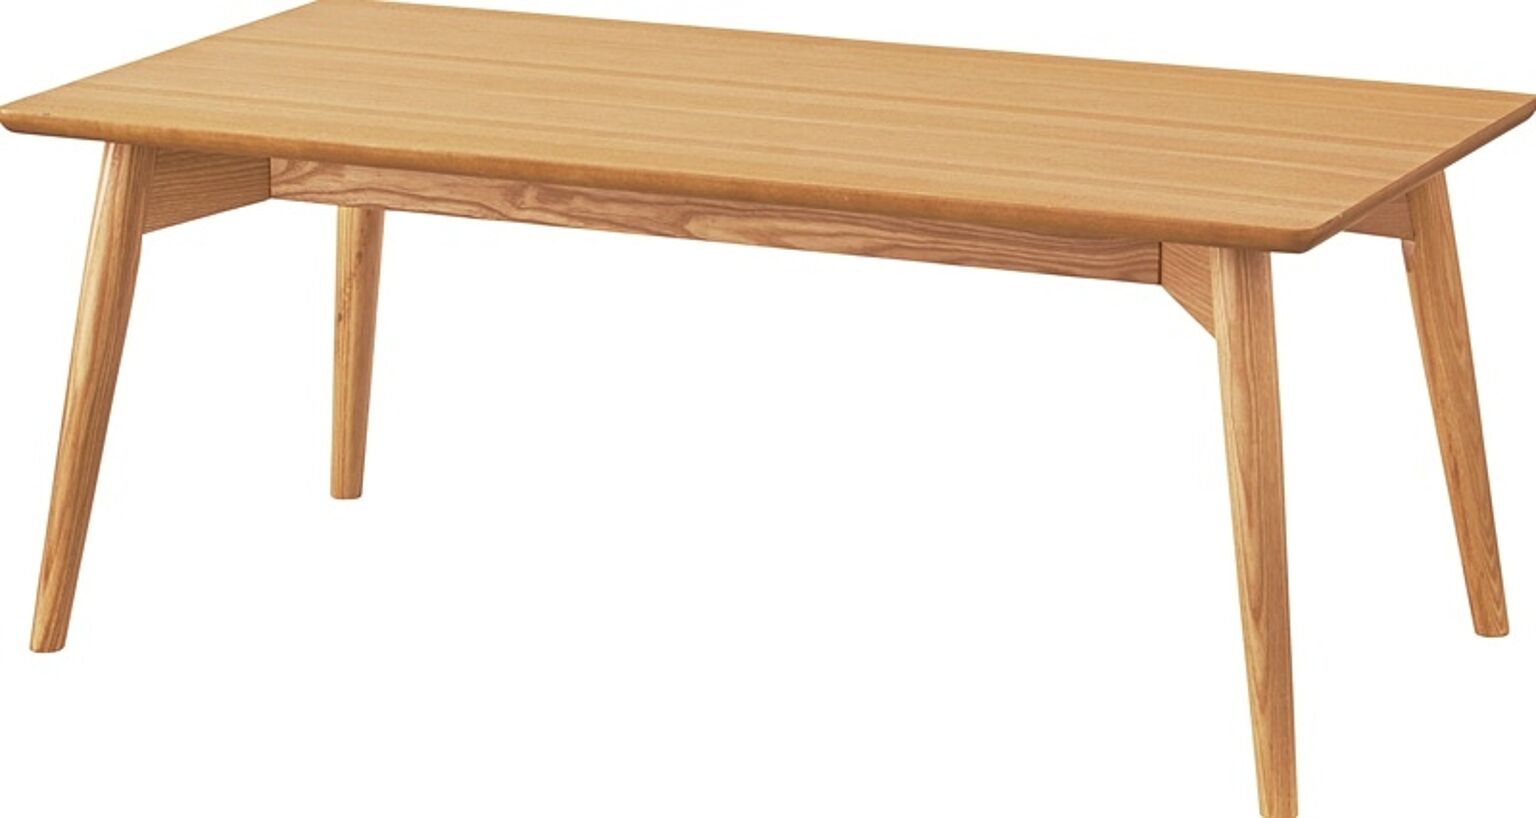 【クーポン配布】カラメリ センターテーブル W100×D50×H40 ナチュラル テーブル ローテーブル リビングテーブル かわいい 北欧 おしゃれ センターテーブル パソコンデスク シンプル 木製 